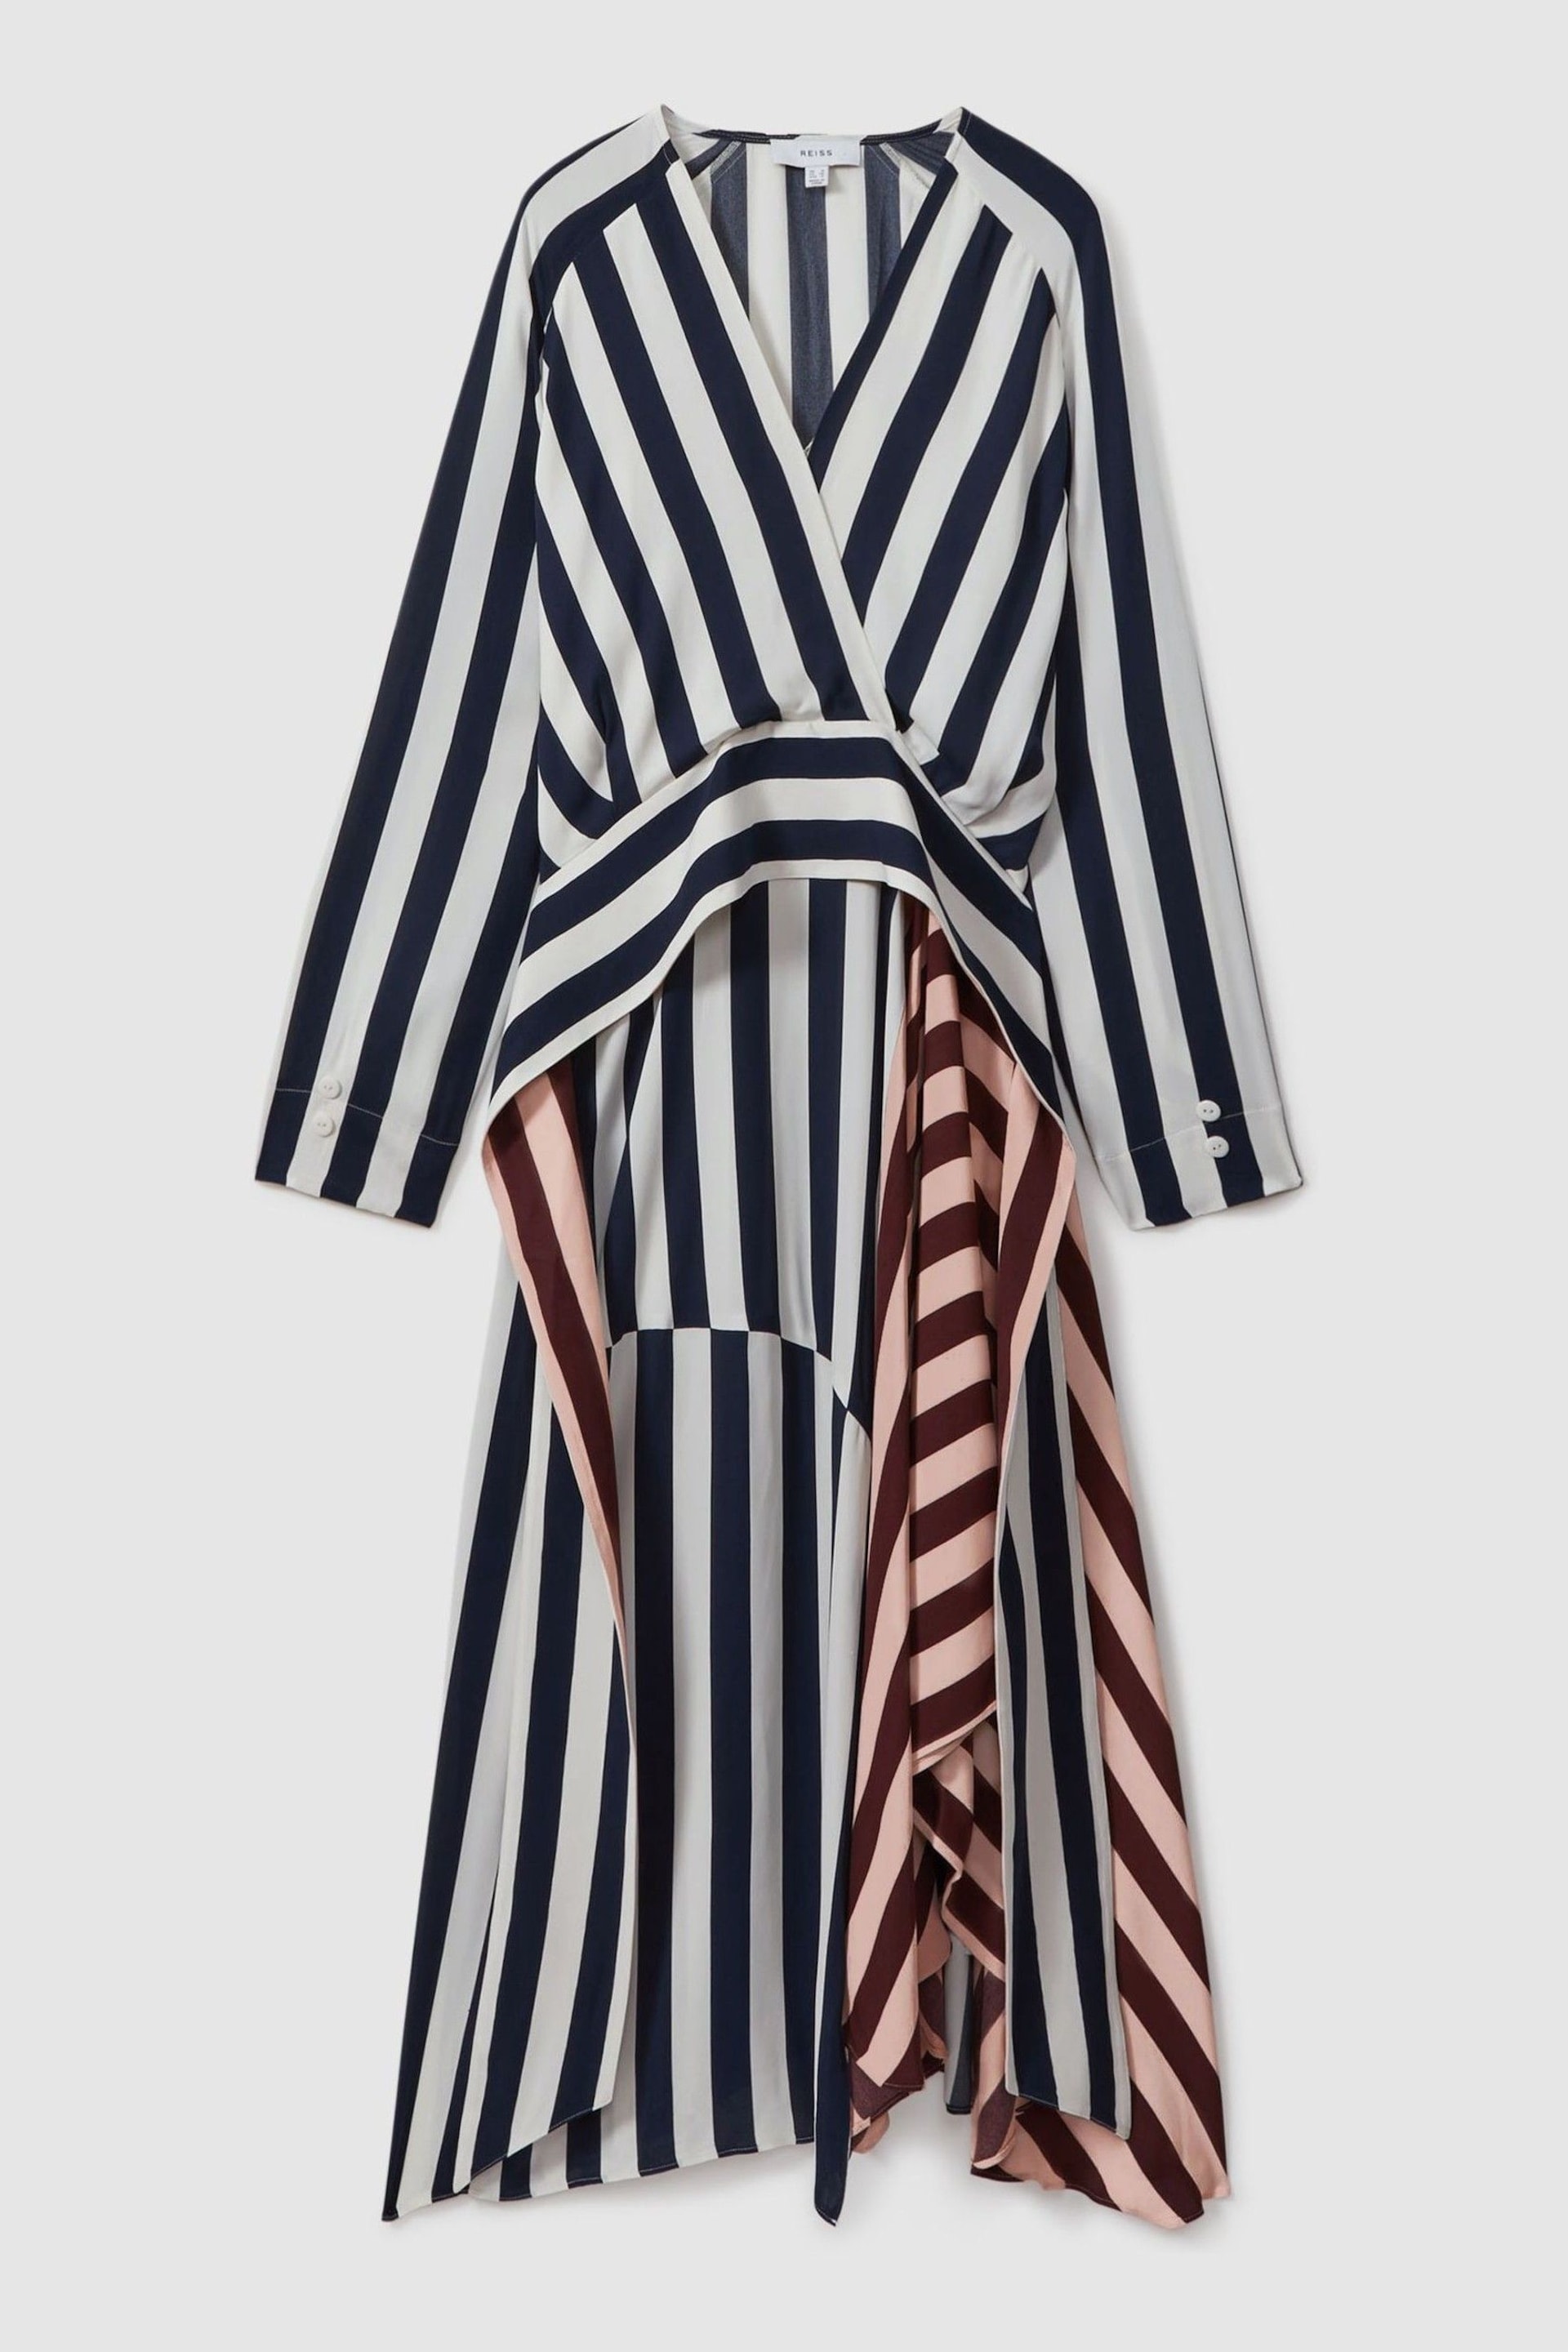 Reiss Navy/Off White Nola Colourblock Stripe Asymmetric Midi Dress - Image 2 of 6